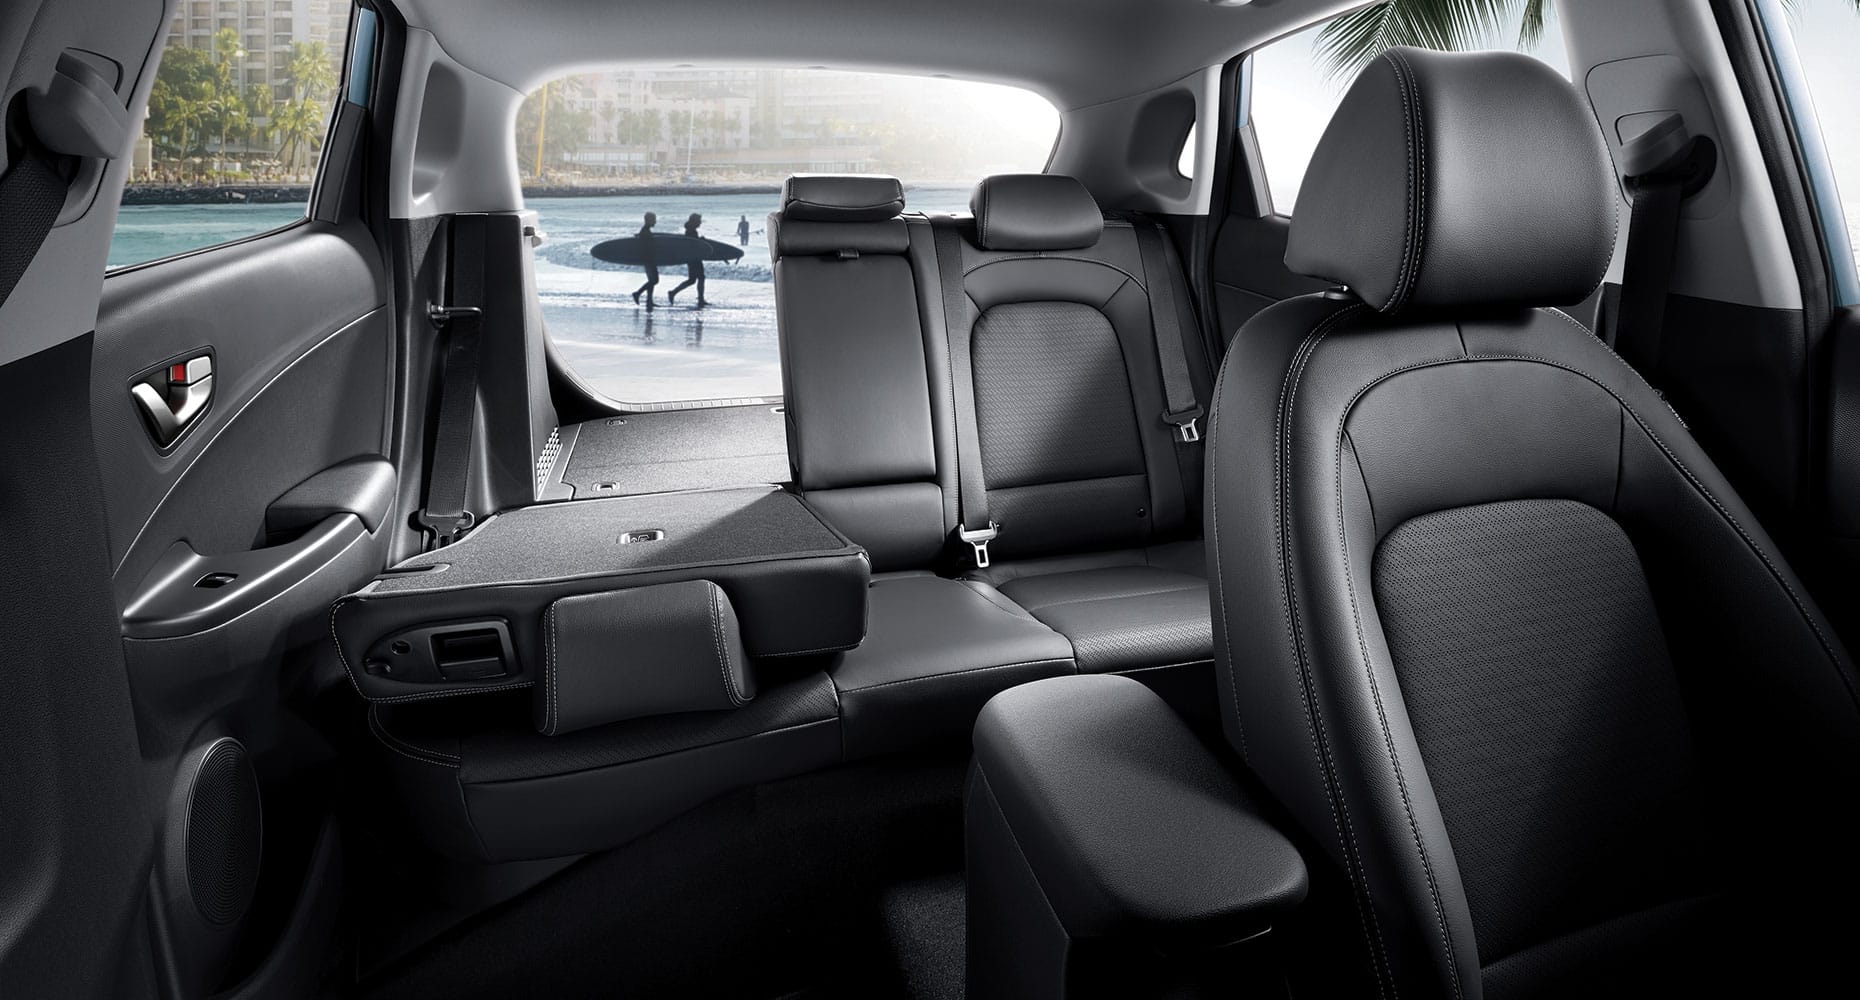 siège rabattu permettant plus d'espace de rangement à l'intérieur du Hyundai Kona 2021